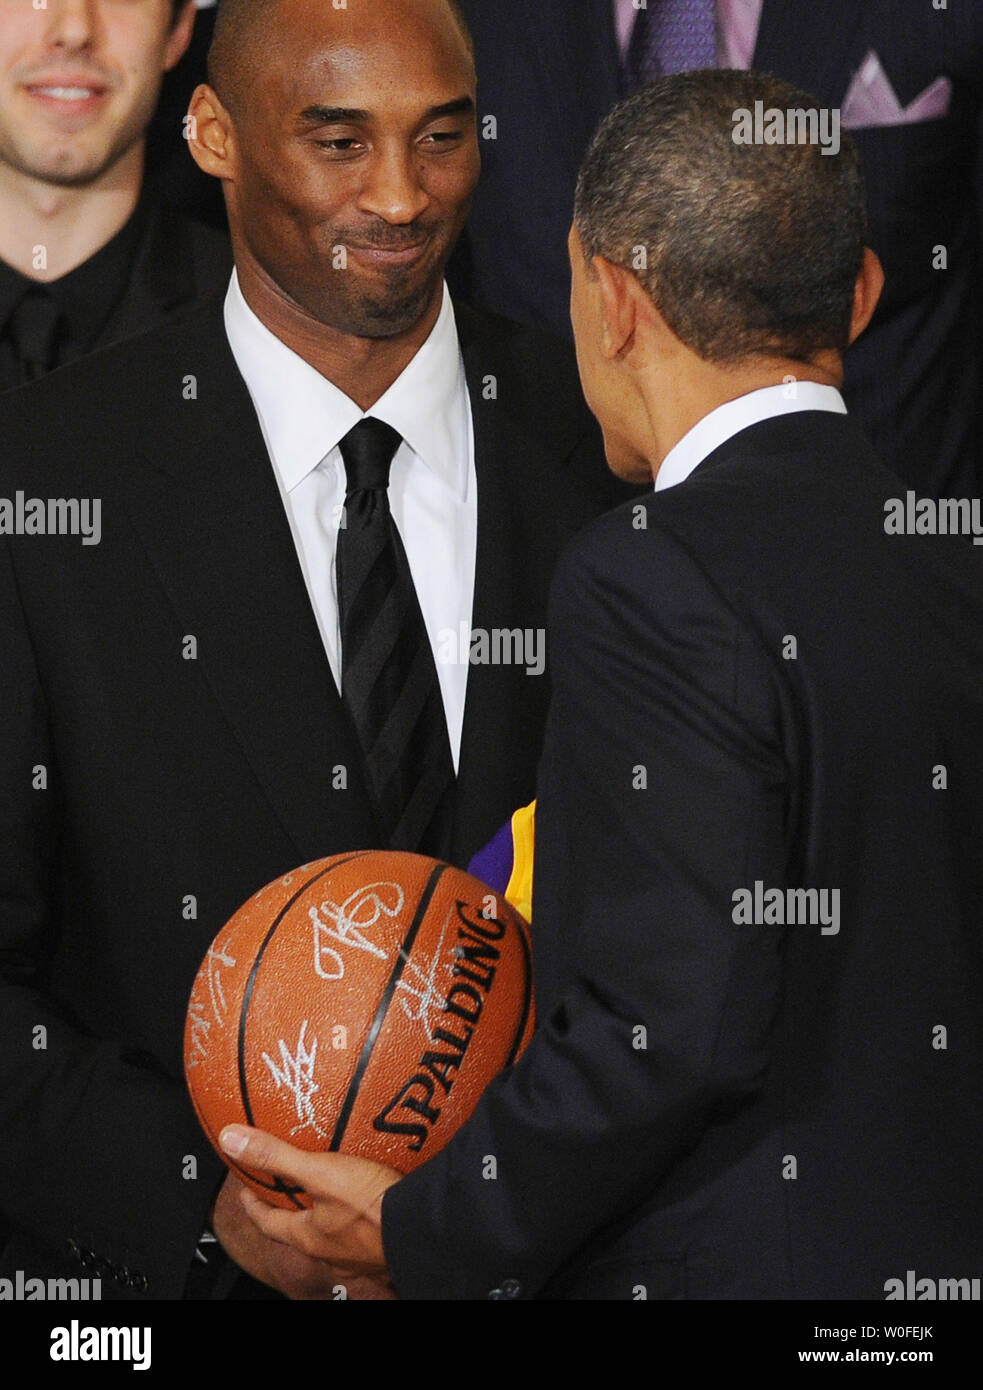 Us-Präsident Barack Obama schüttelt Hände mit guard Kobe Bryant als Obama hosts der National Basketball Association Meister 2009 Los Angeles Lakers im East Room des Weißen Hauses in Washington am 25. Januar 2010. UPI/Roger L. Wollenberg Stockfoto